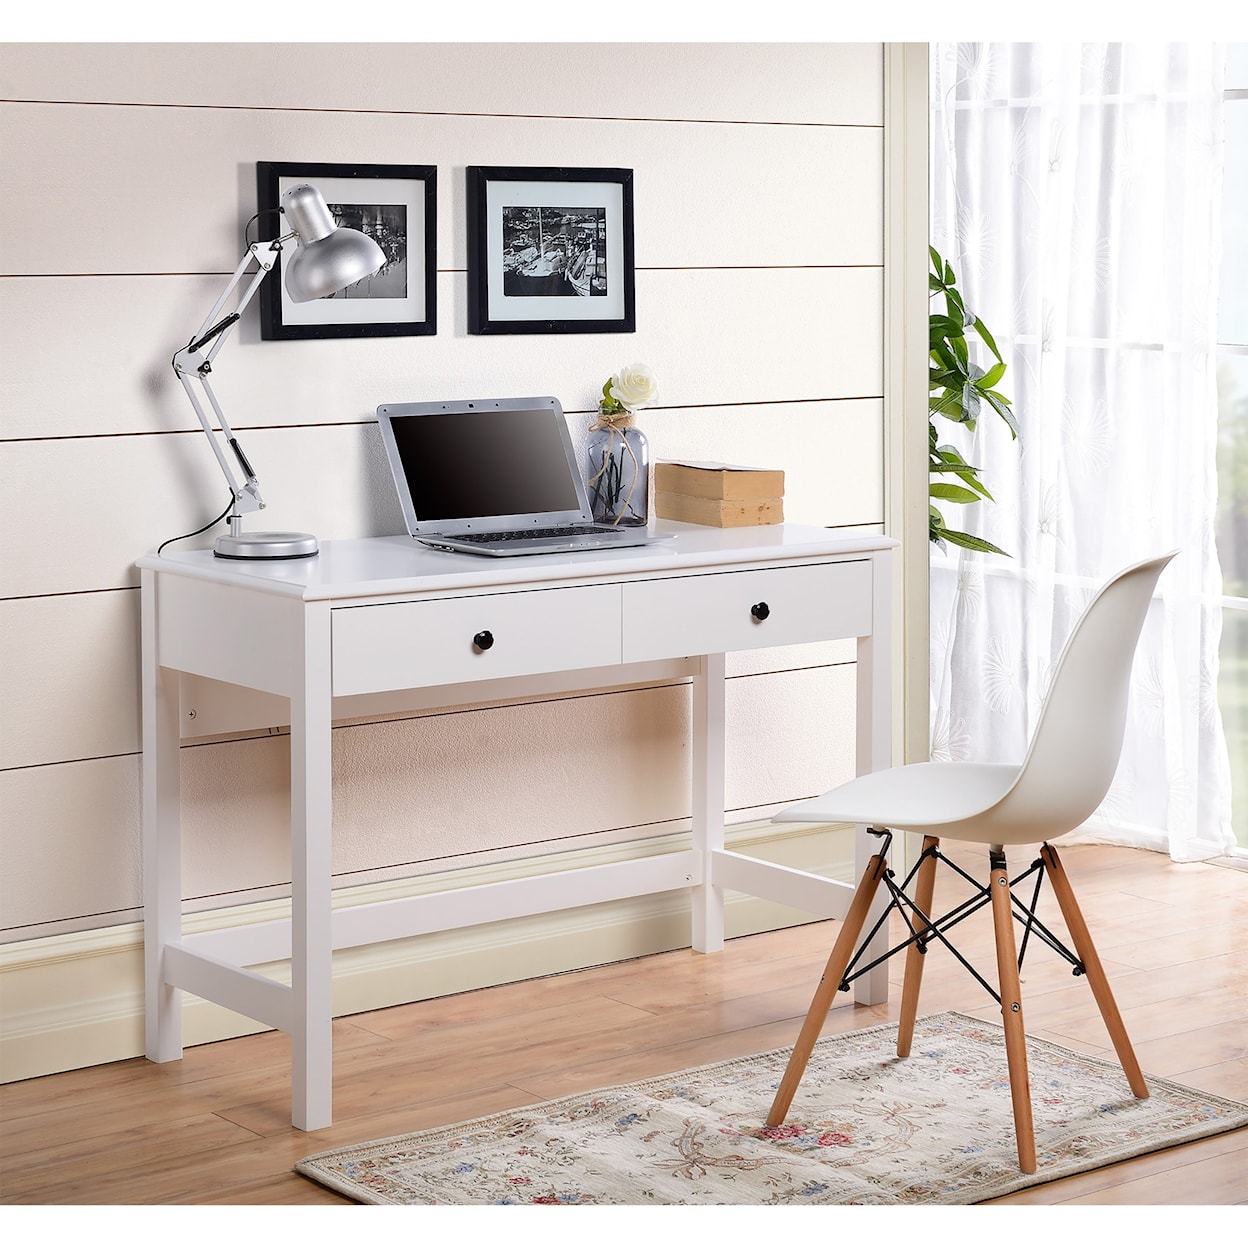 Ashley Furniture Signature Design Othello Home Office Small Desk